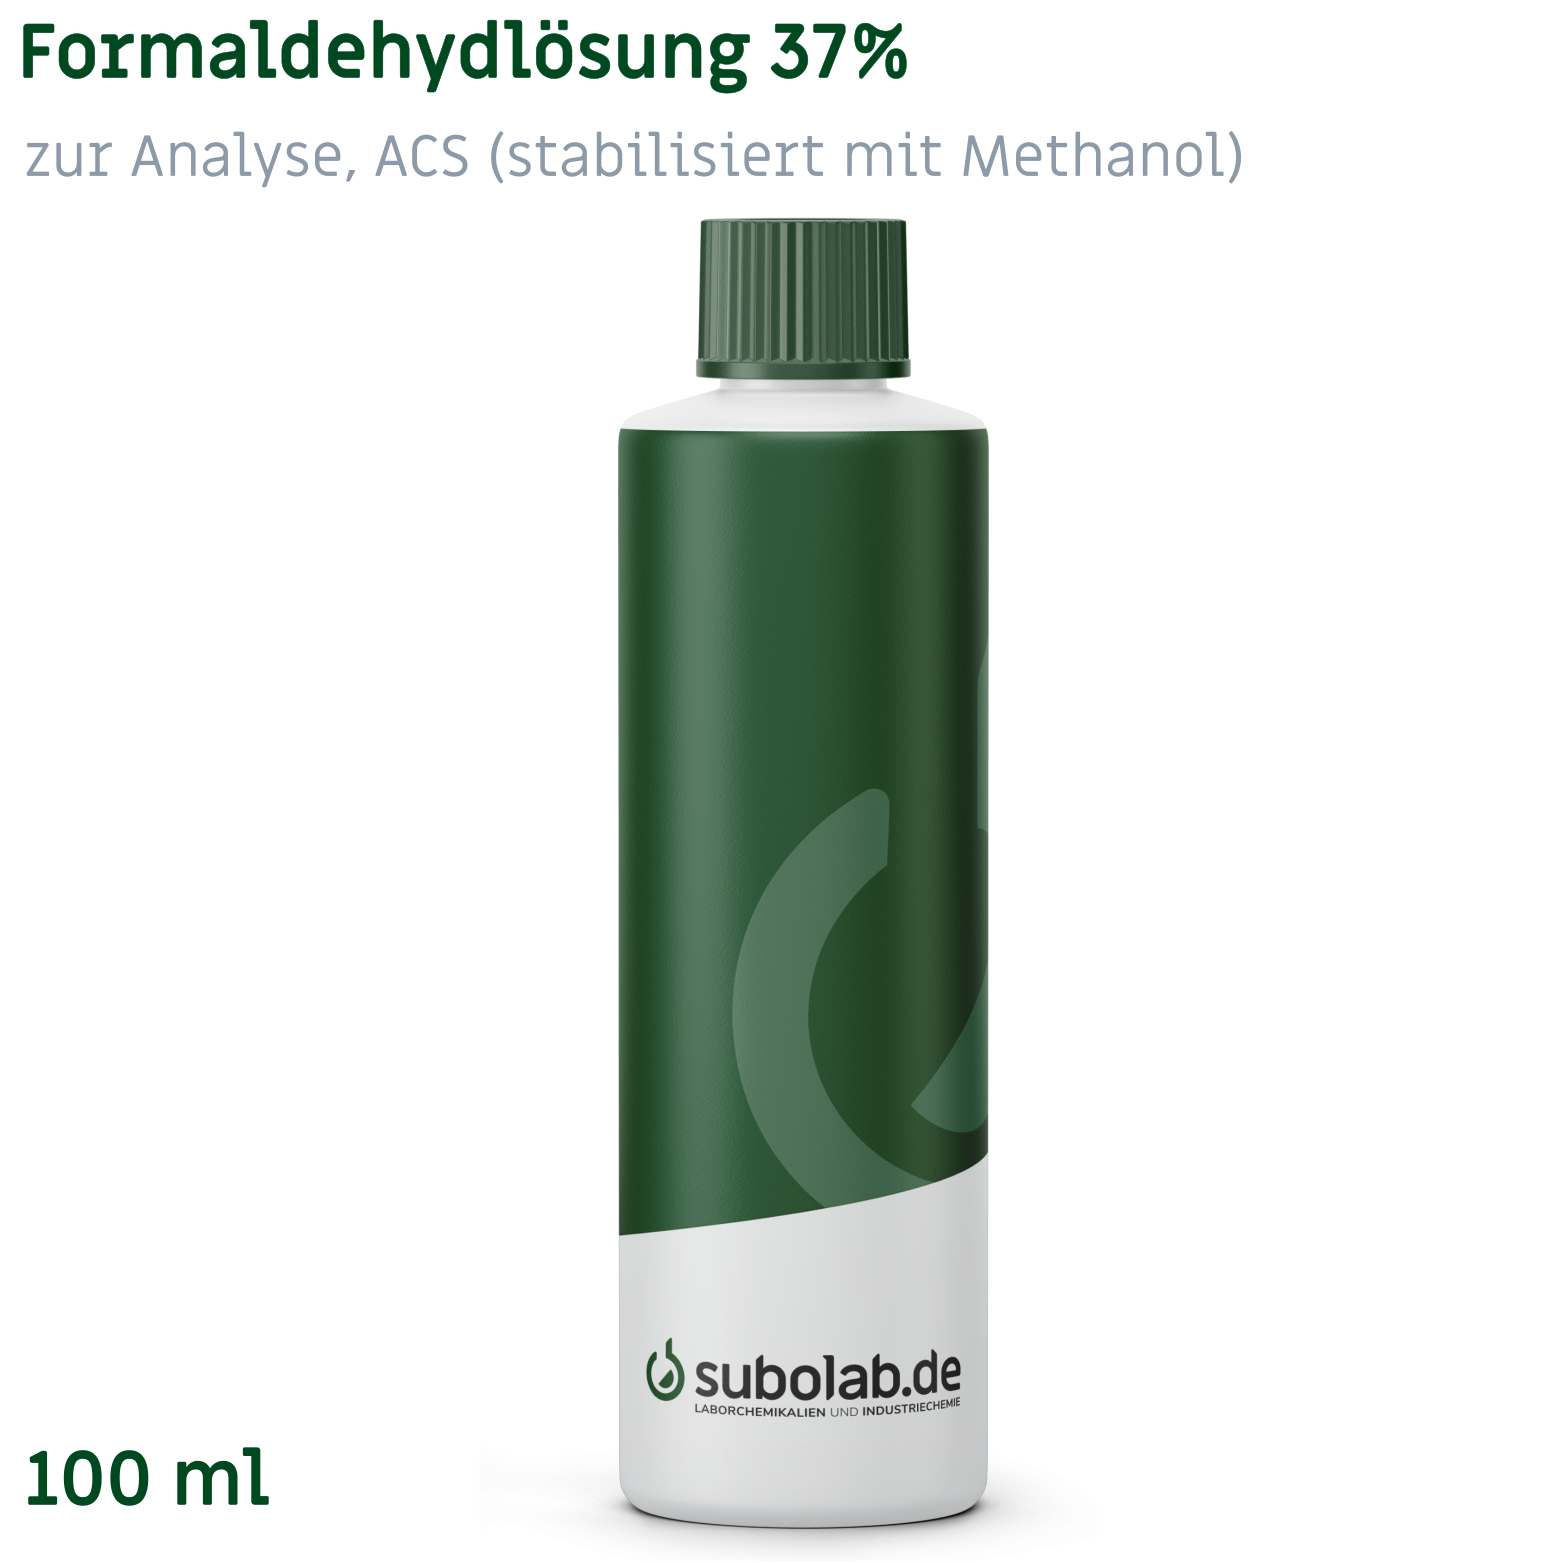 Bild von Formaldehydlösung 37% zur Analyse, ACS (stabilisiert mit Methanol) (100 ml)